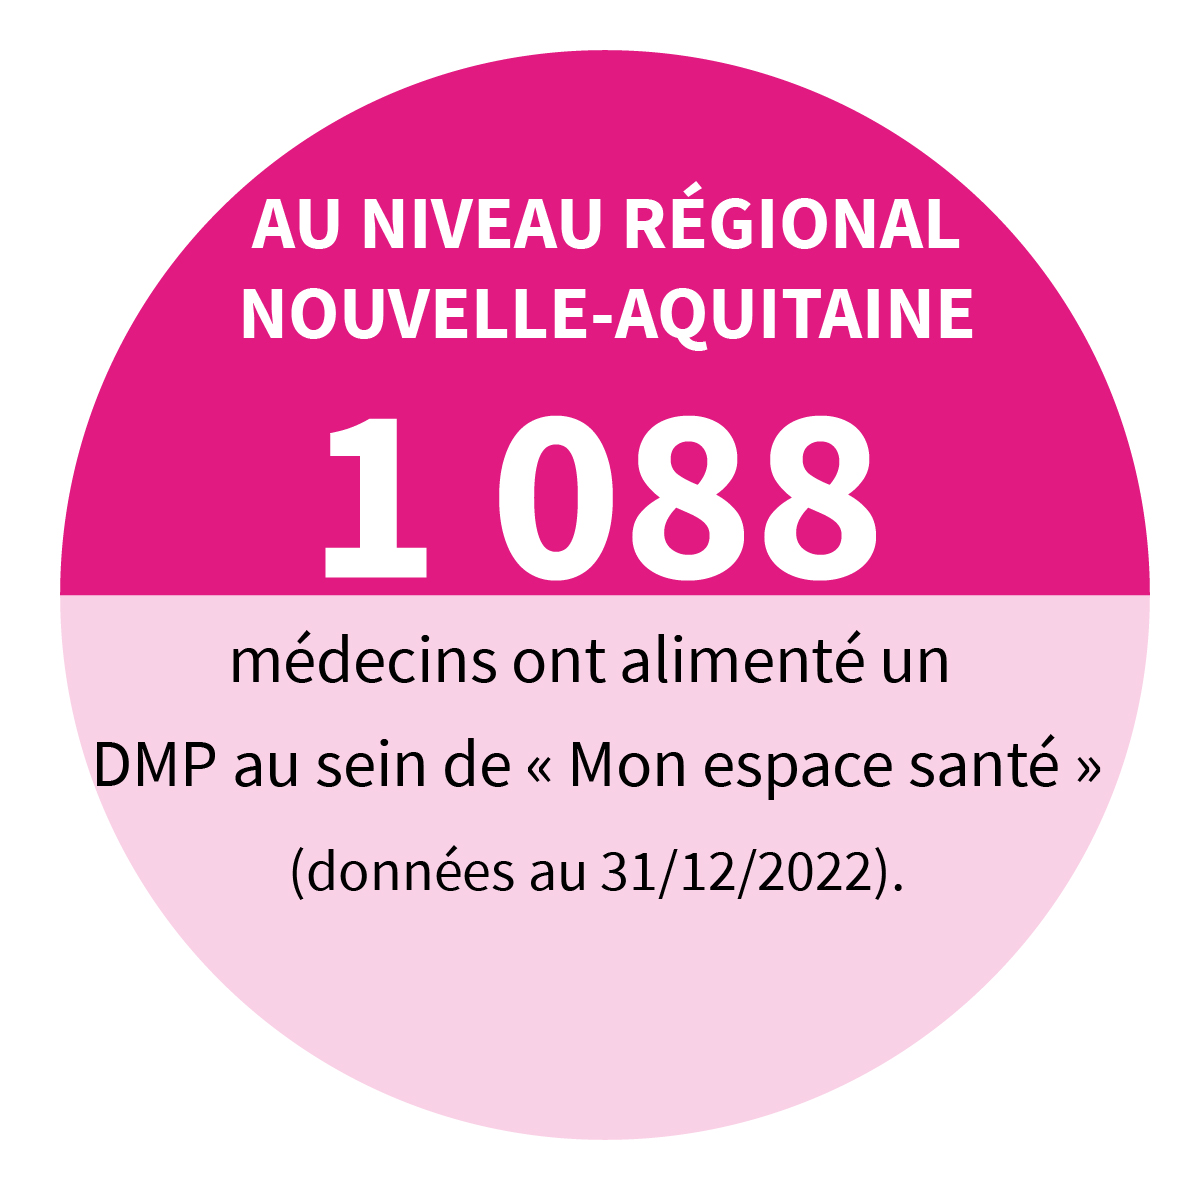 AU NIVEAU REGIONAL NOUVELLE-AQUITAINE 1 088 médecins ont alimenté un DMP au sein de « Mon espace santé » (données au 31/12/2022).